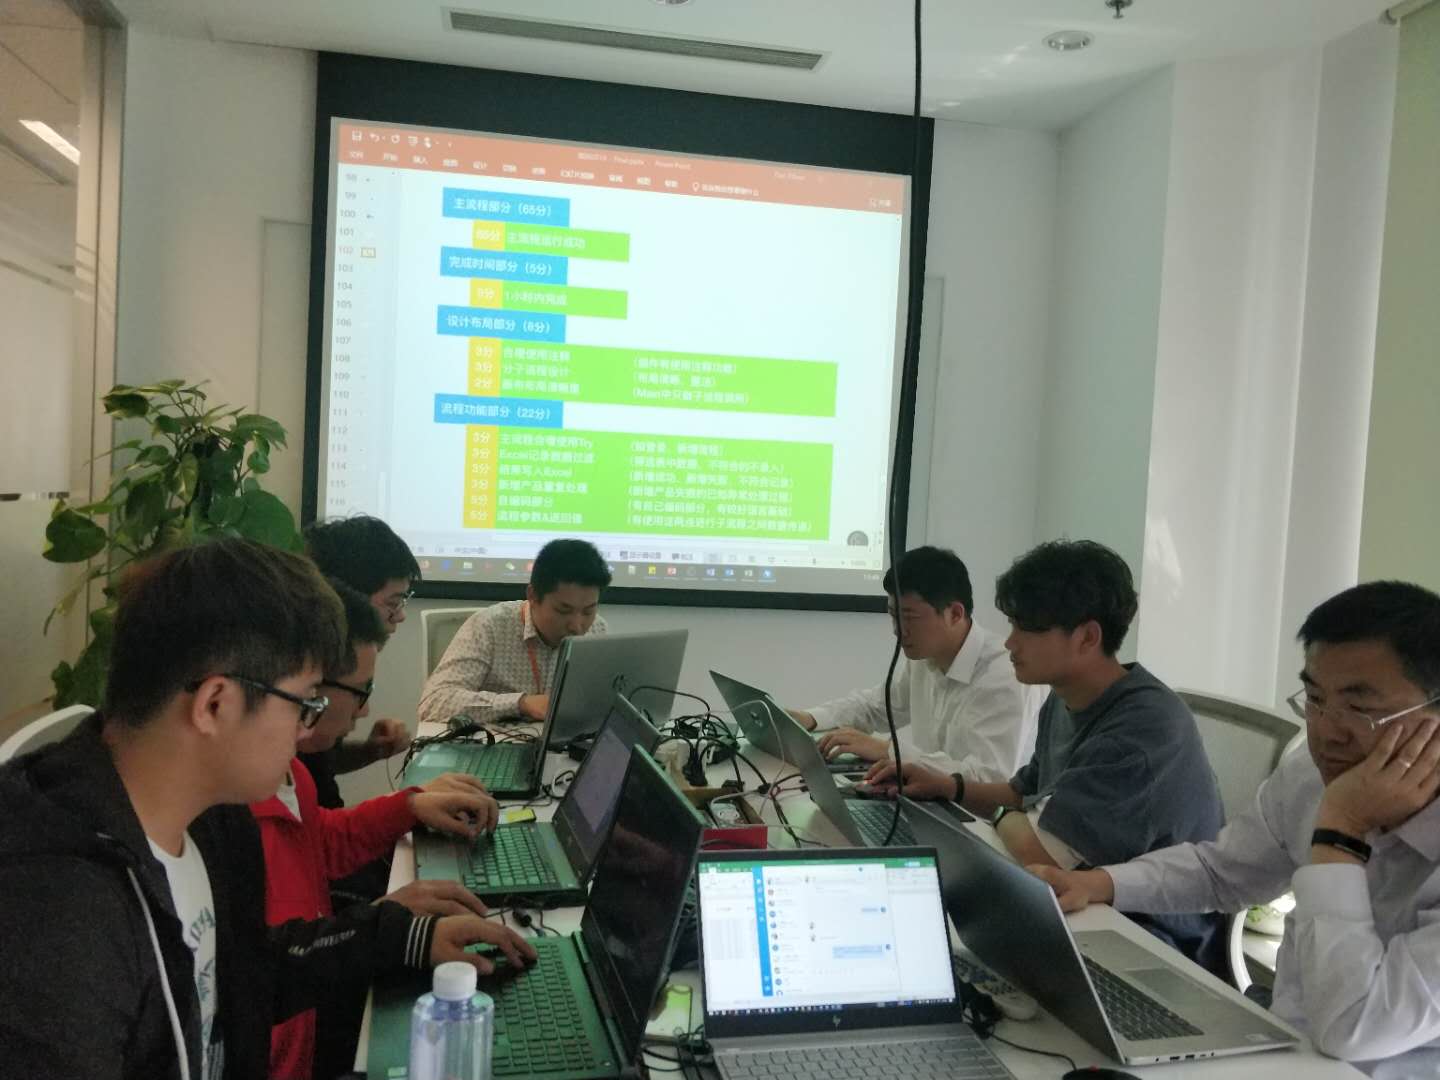 iS-RPA 技术认证培训 - 北京 20190510 班 - 培训完成